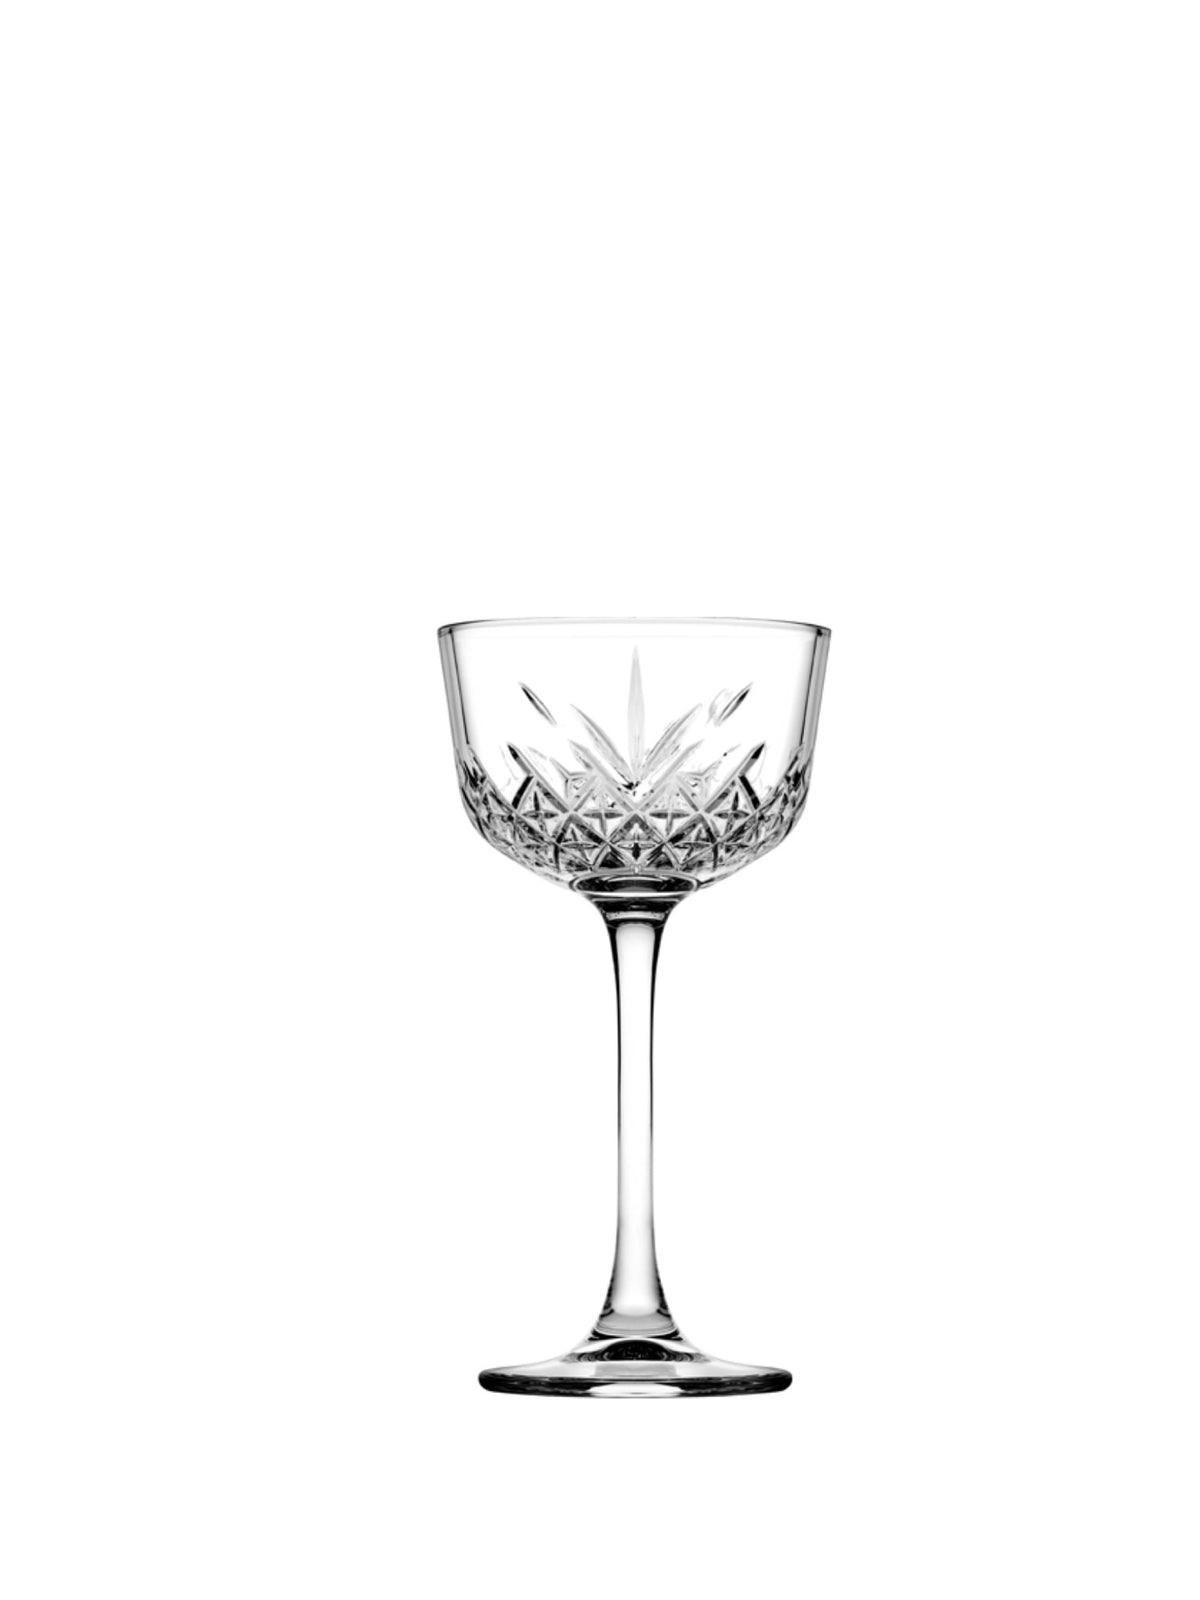 Pasabahce Timeless Nick & Nora glas - et elegant og sofistikeret glas til at nyde dine yndlingscocktails.